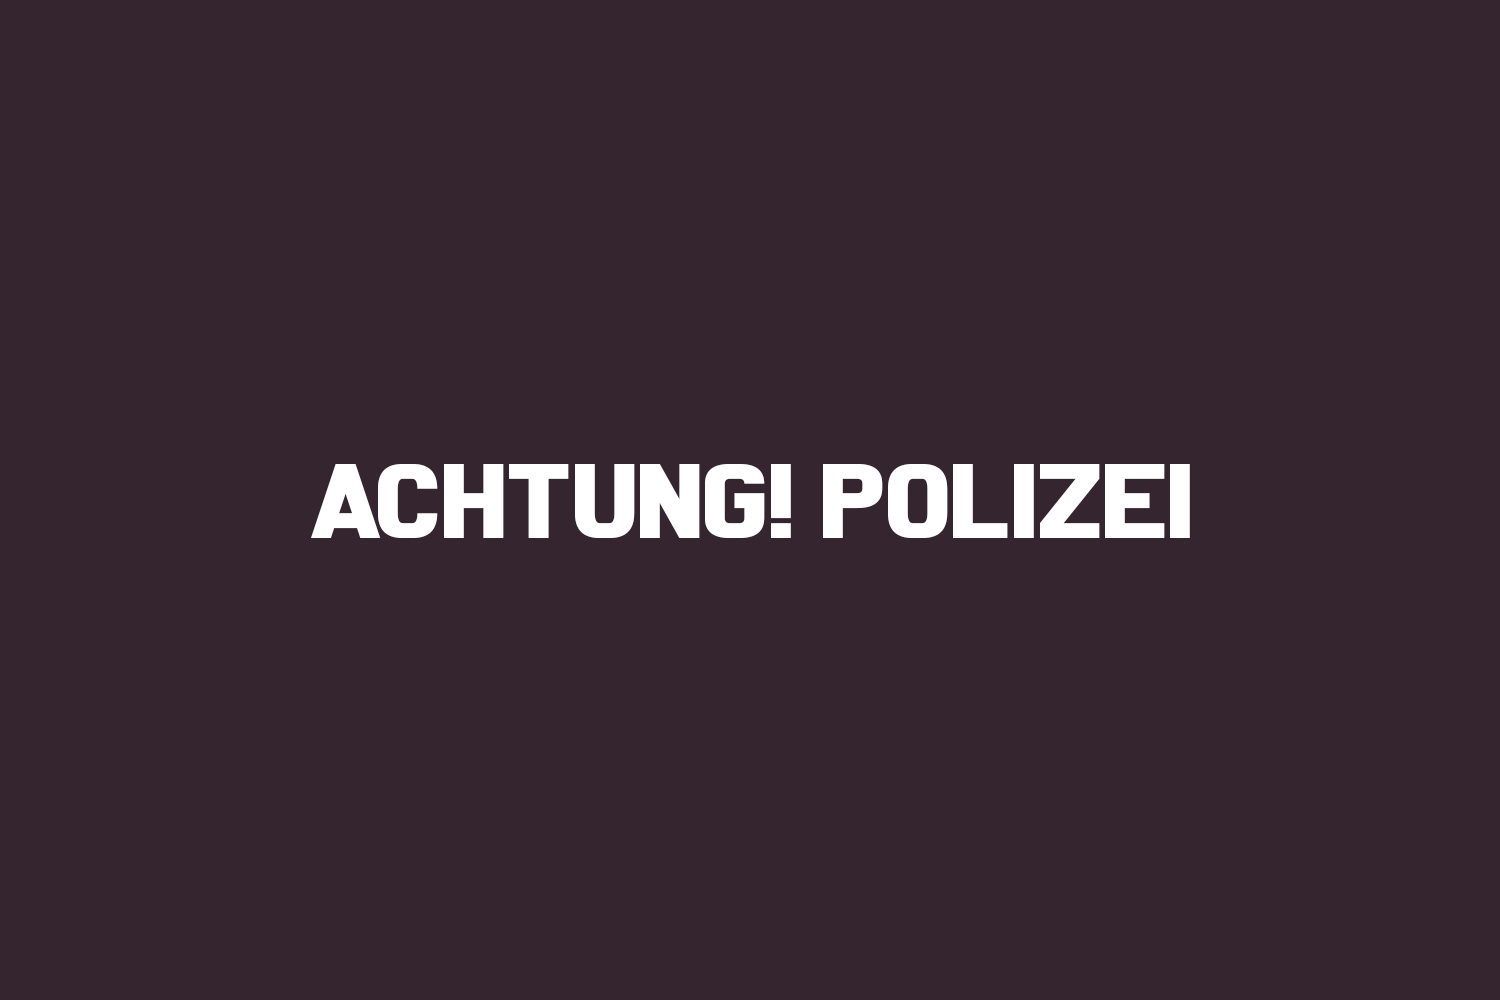 Achtung! Polizei | Fonts Shmonts